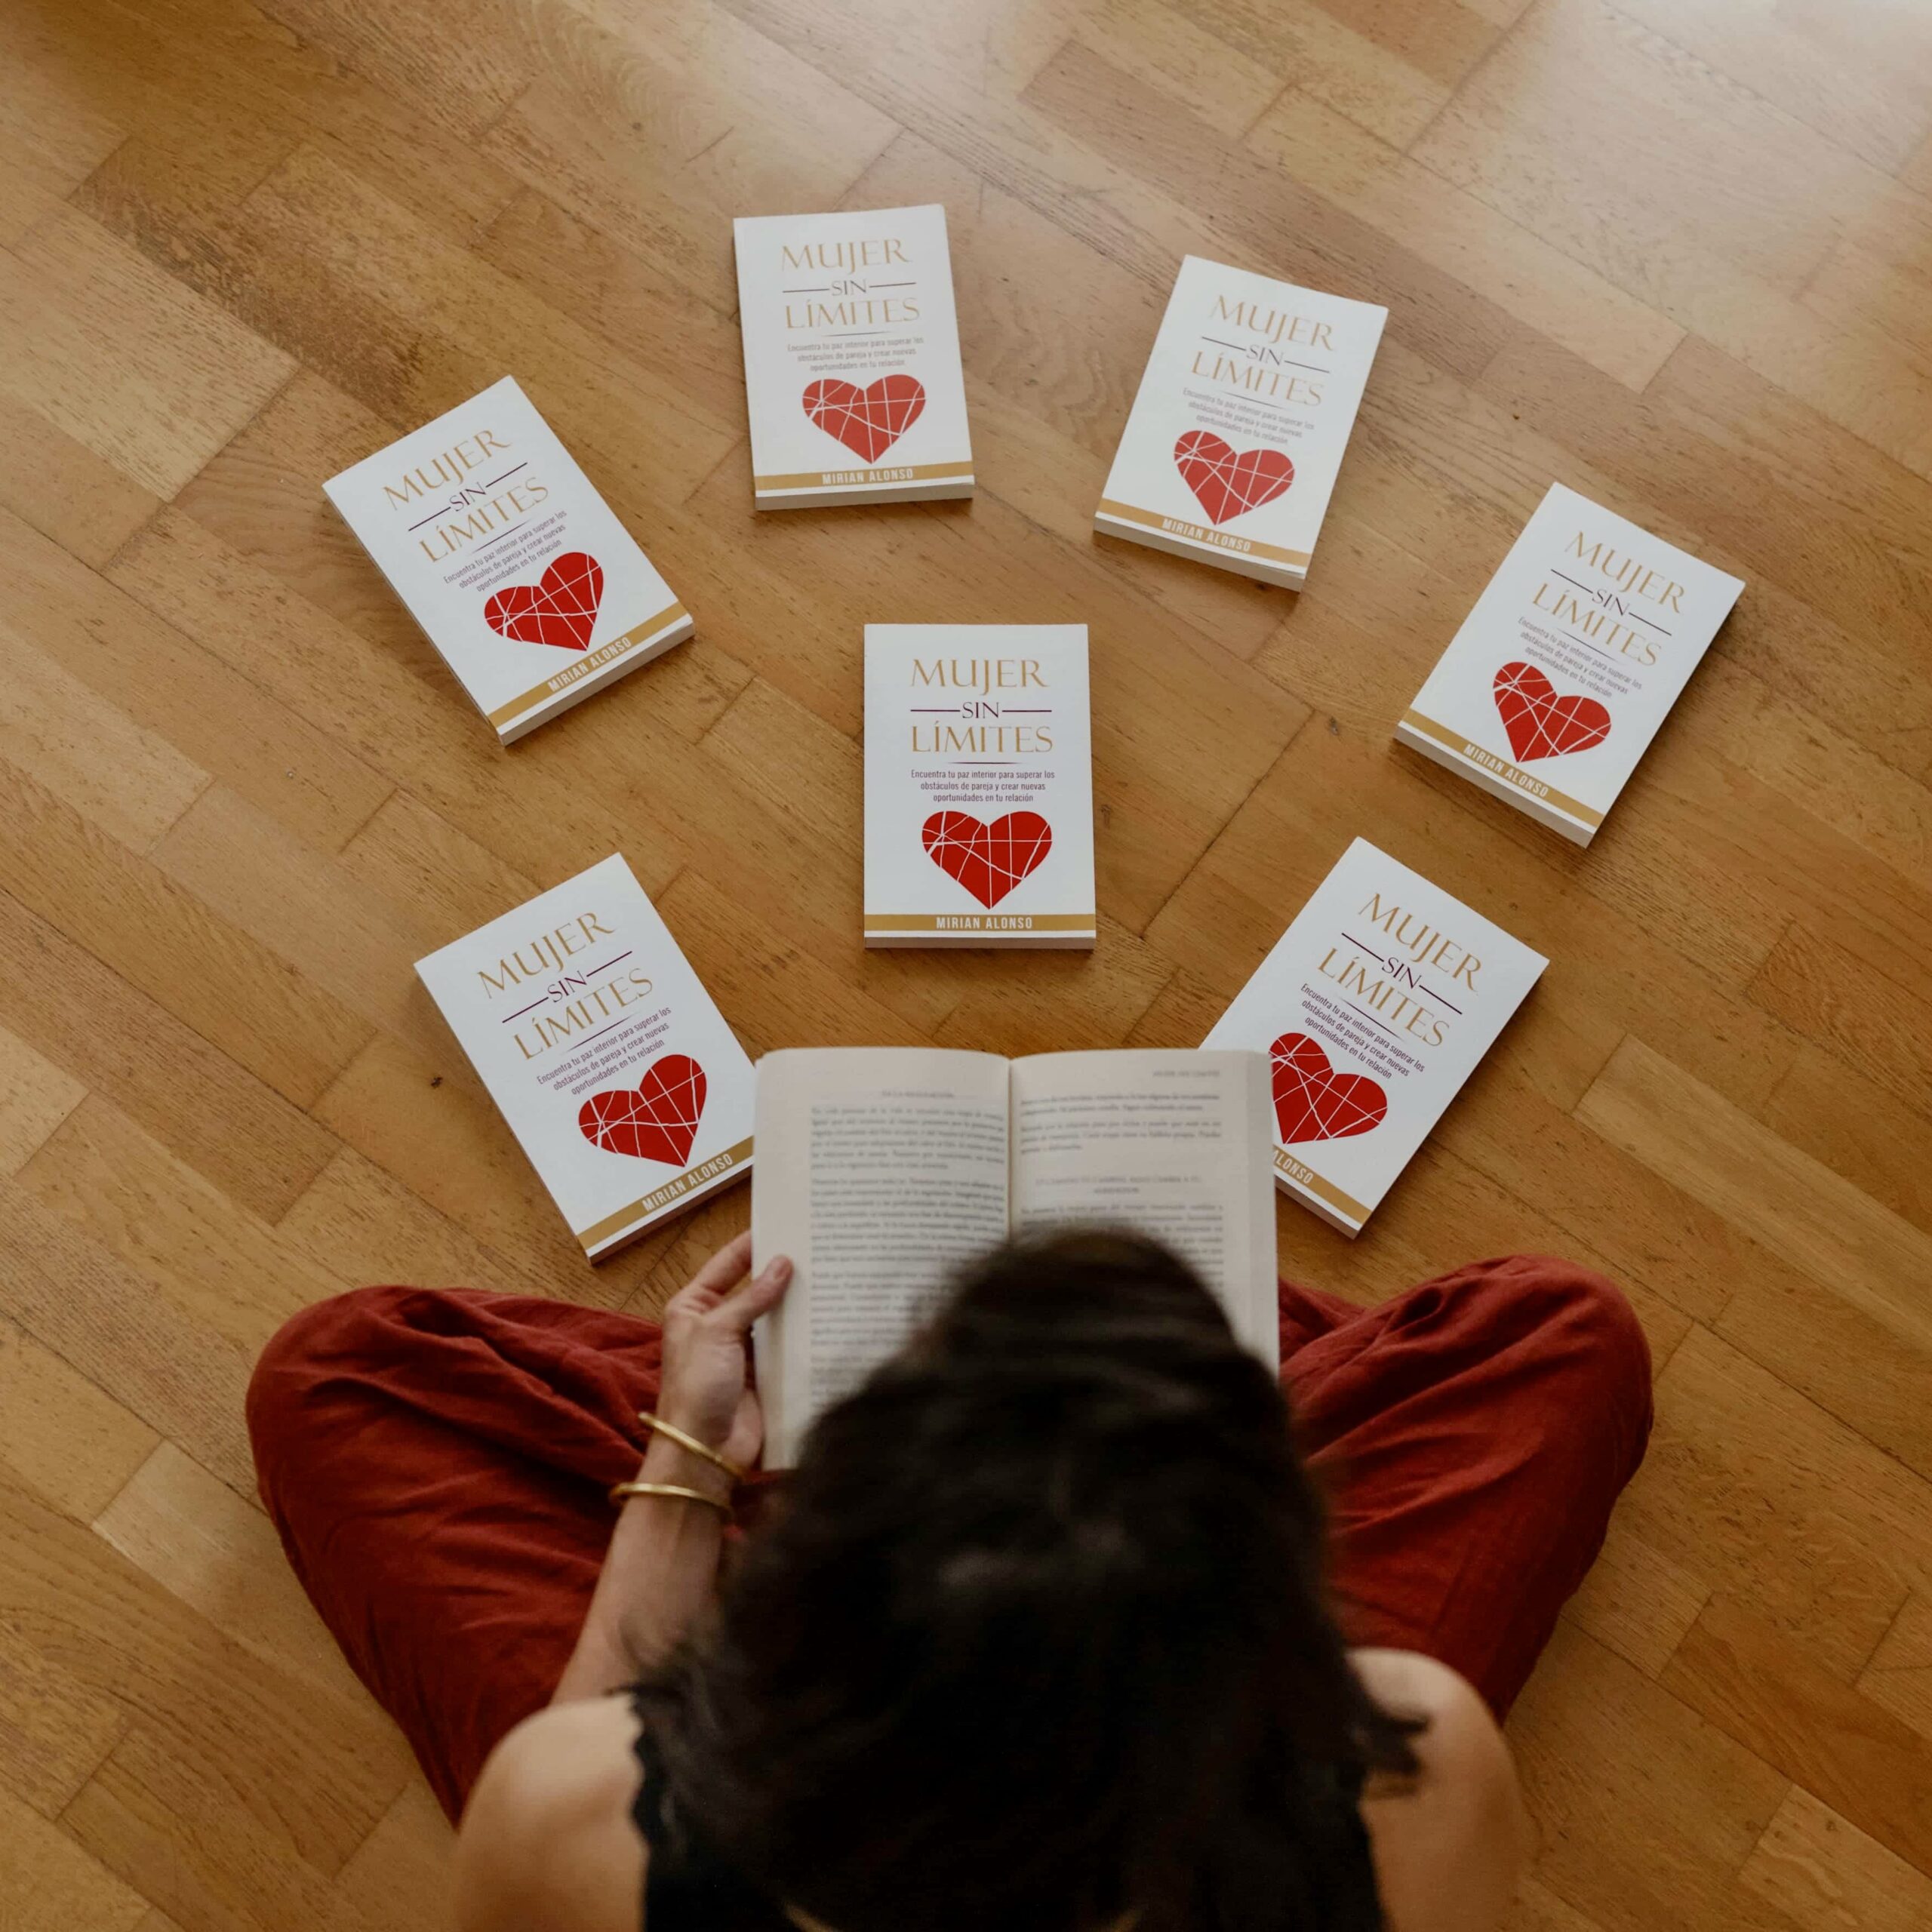 libros parejas amor propio amazon amor incondicional bienestar mujer lecturas amor